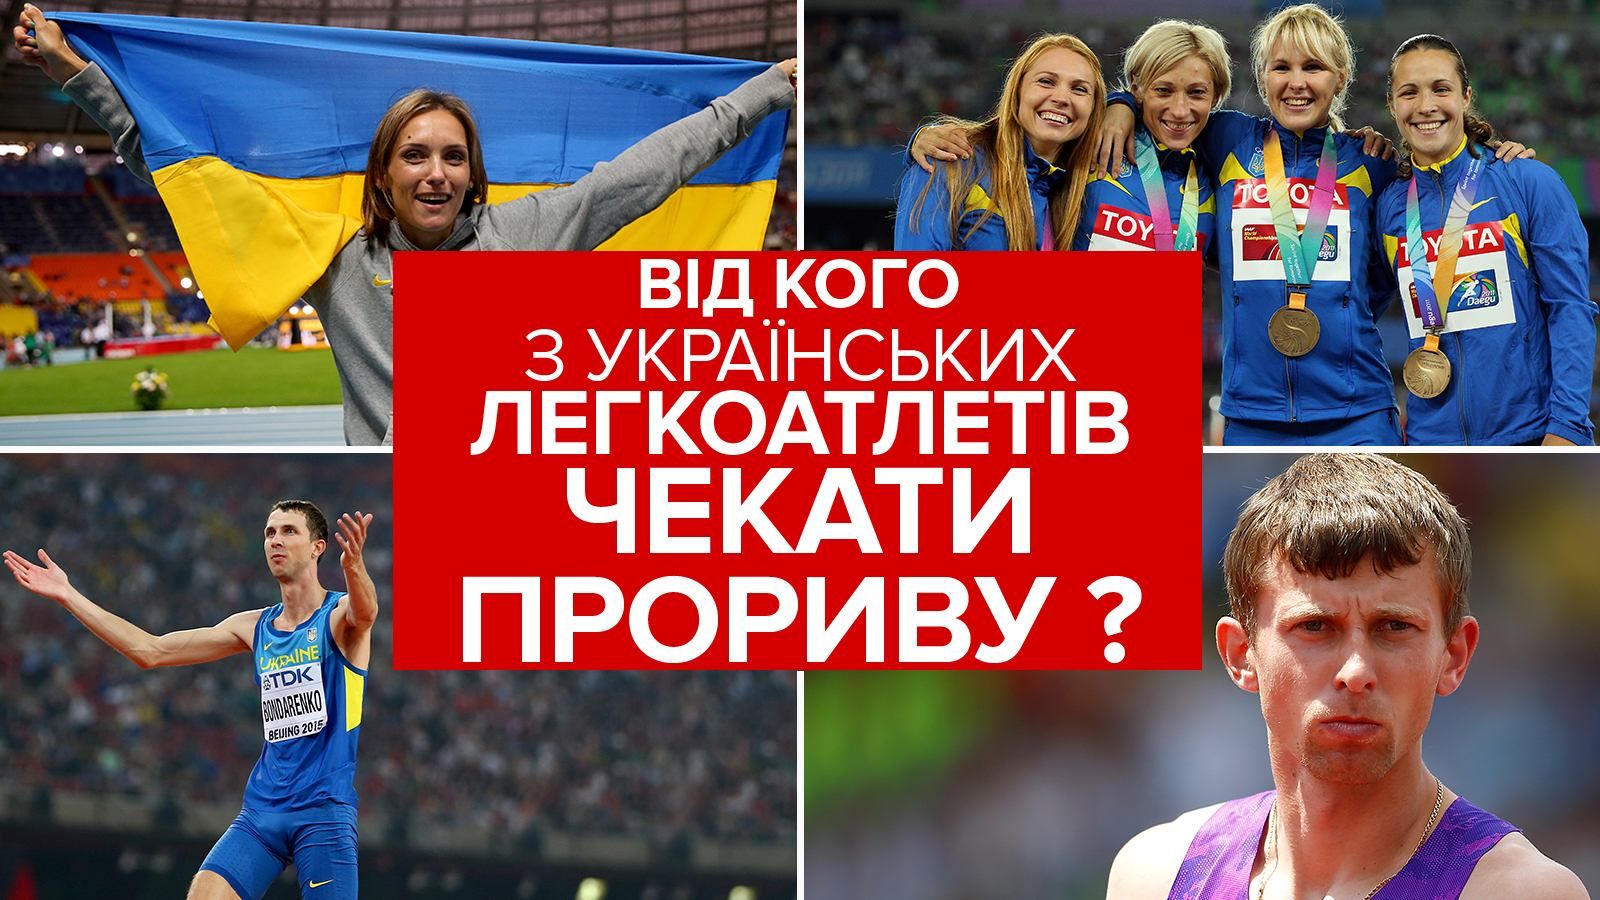 Олимпиада-2016: кто из украинских легкоатлетов может вернуться домой с медалью